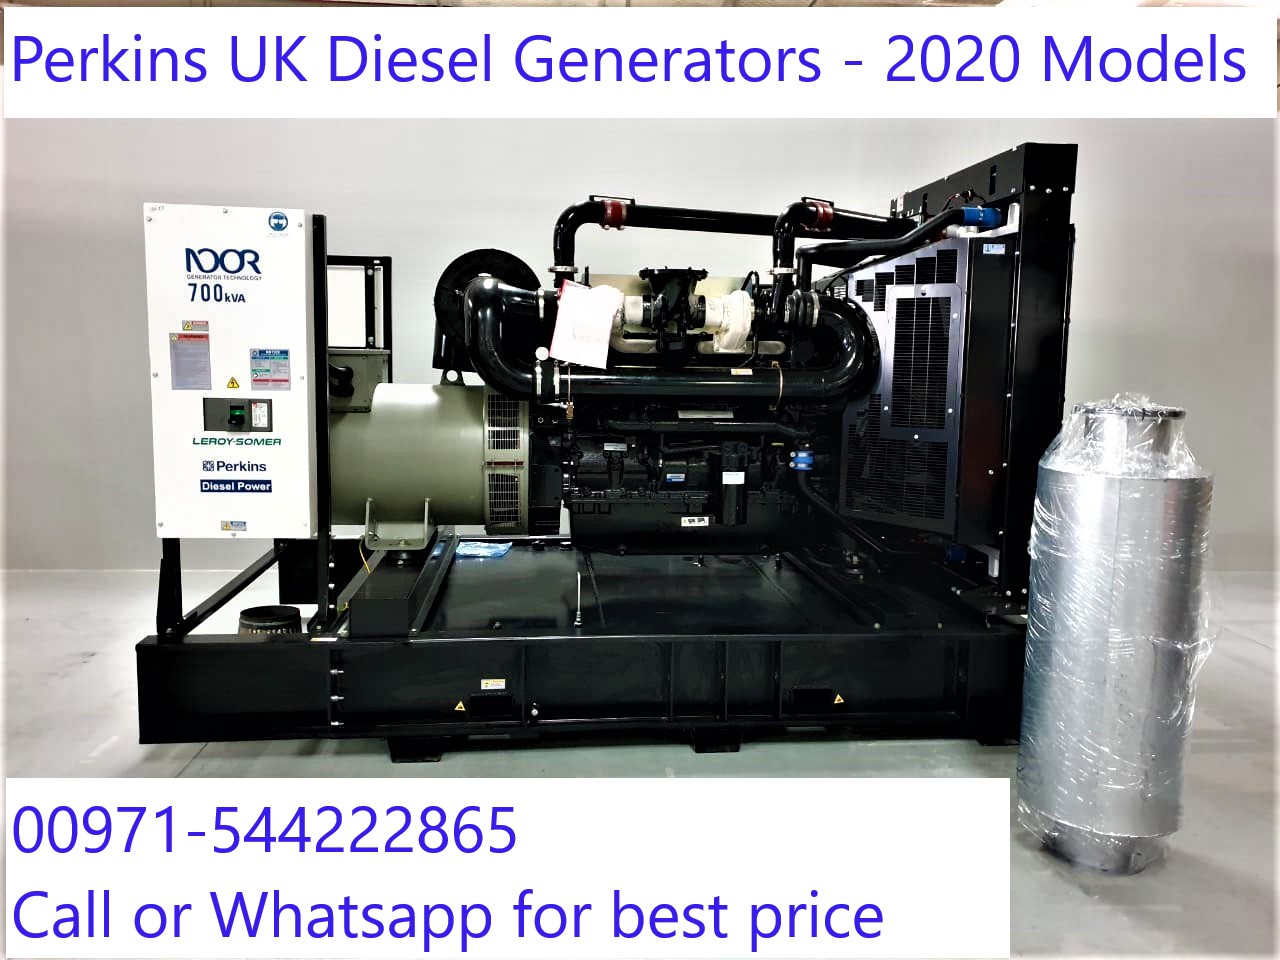 Diesel Generators powered by Perkins UK engine